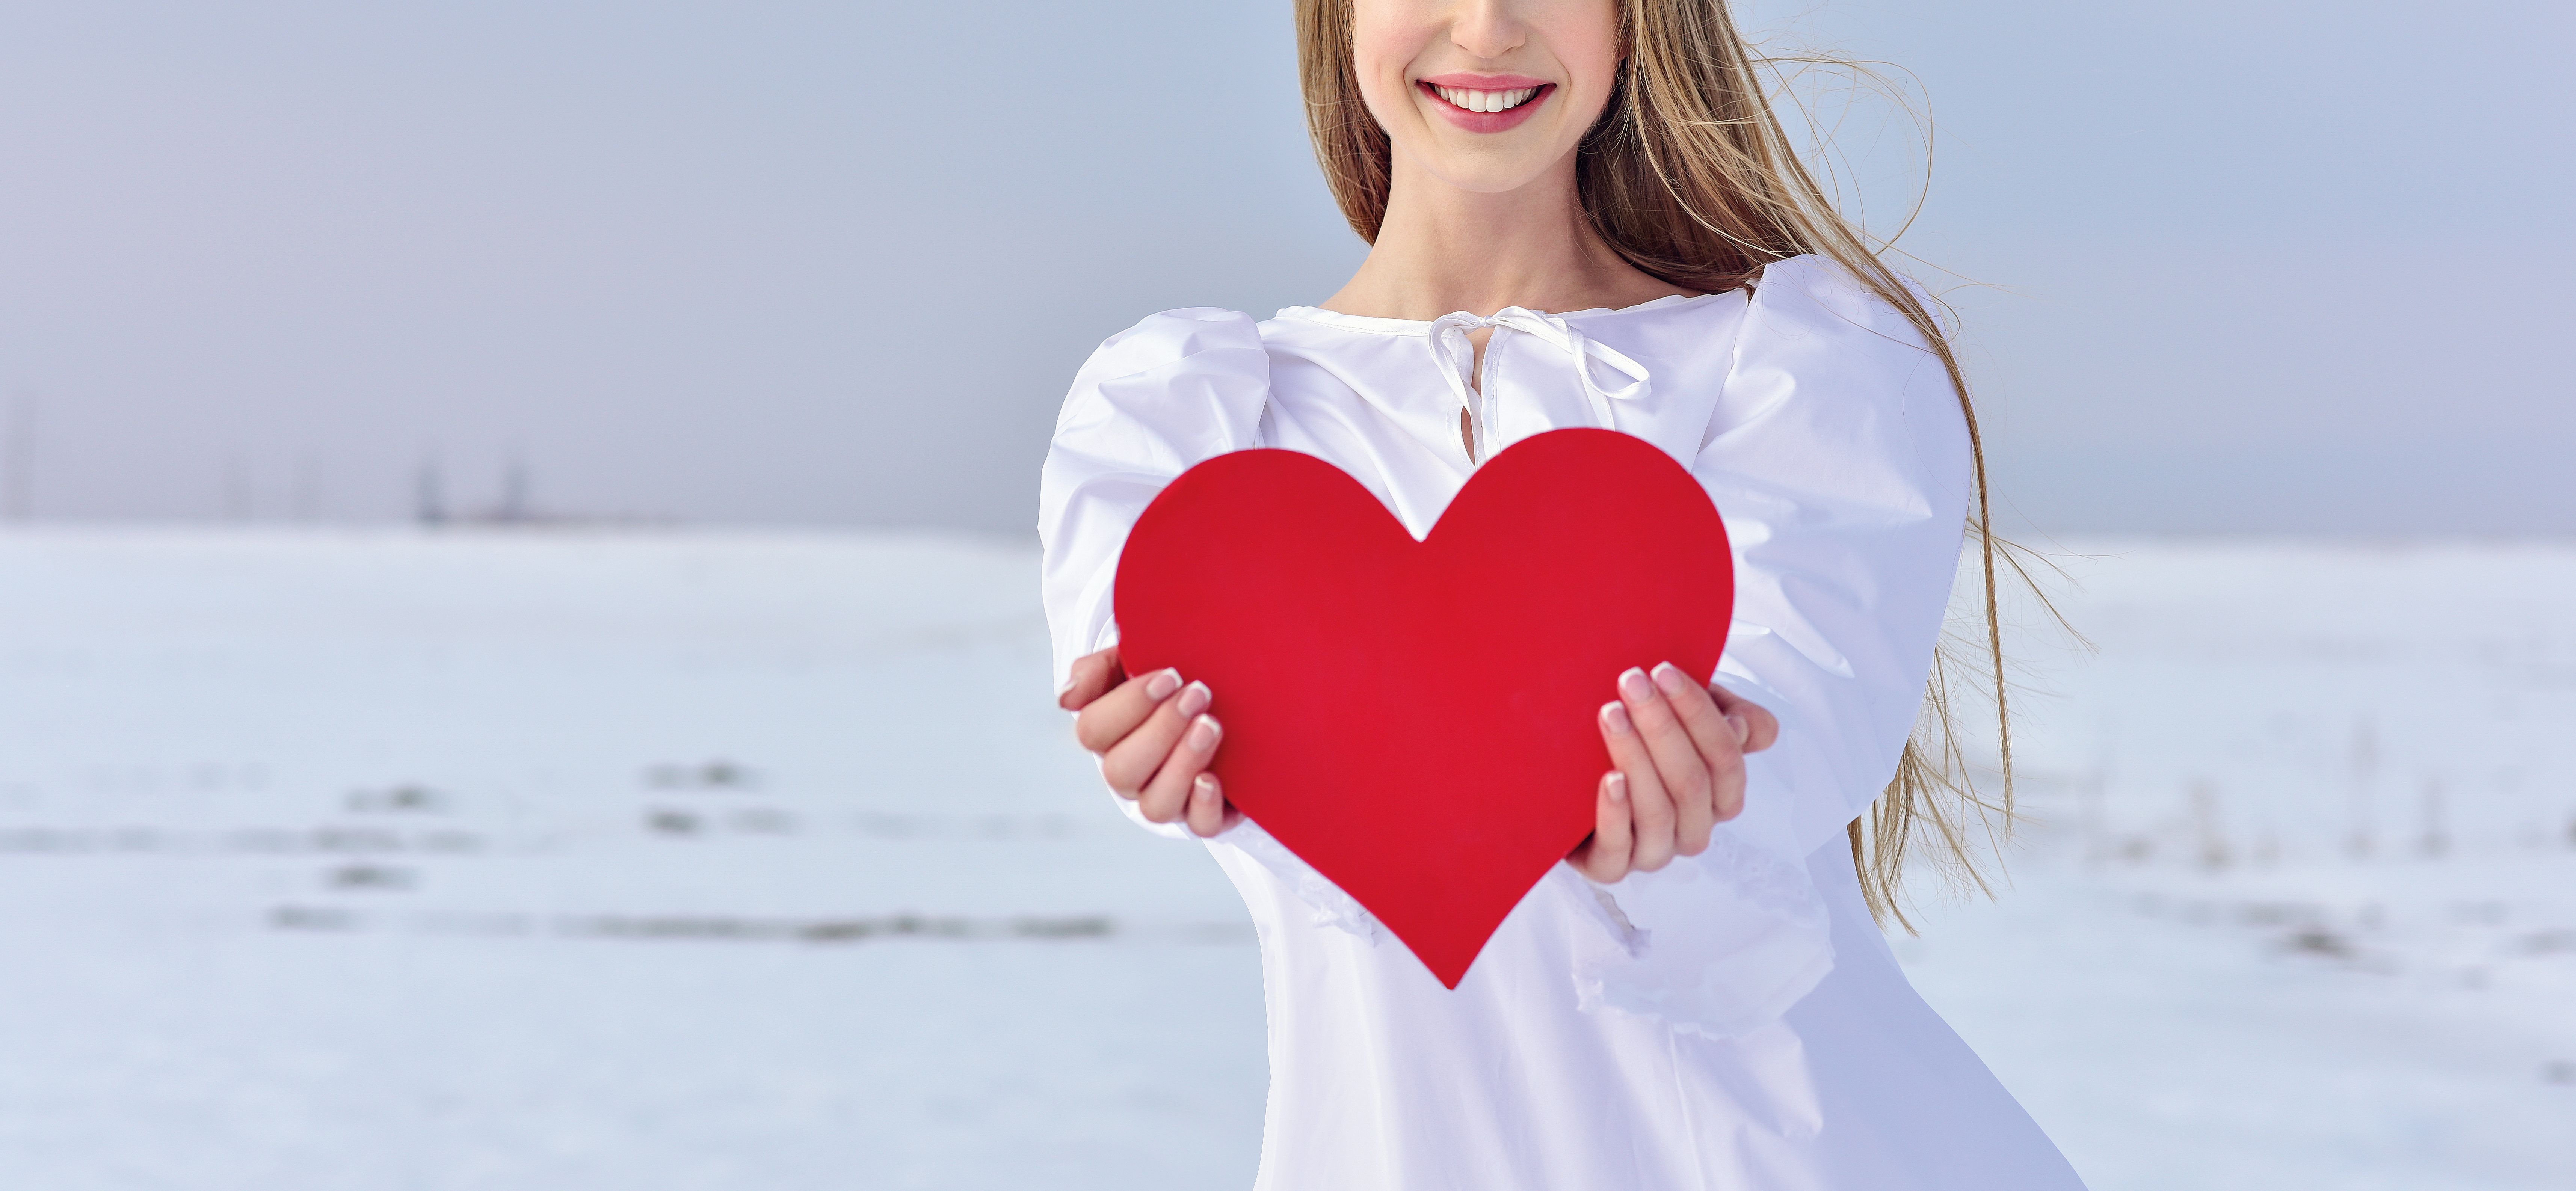 Γυναικεία καρδιά: Χρειάζεται περισσότερη προσοχή;